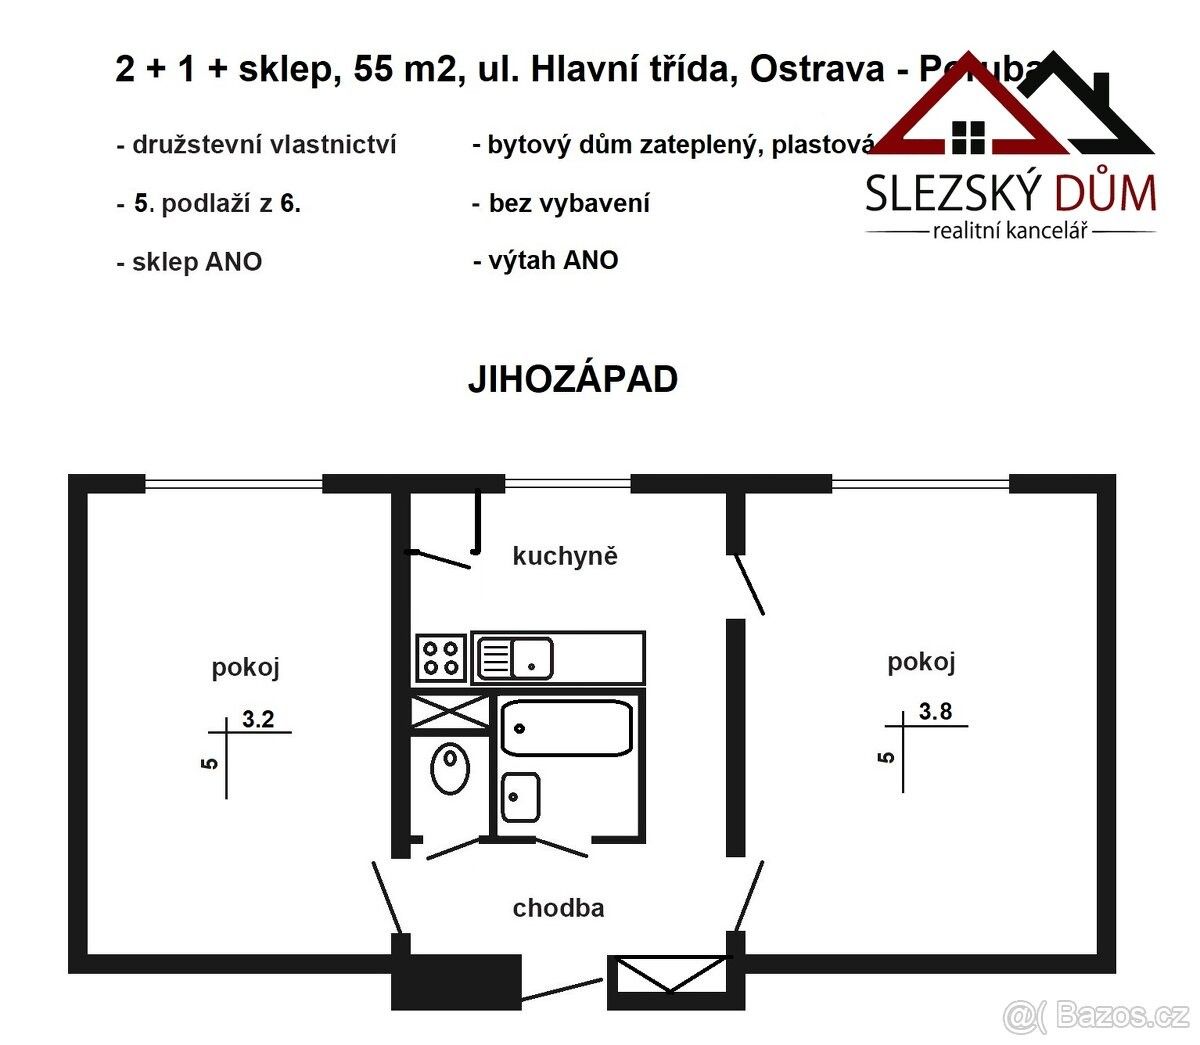 Pronájem byt 2+1 - Ostrava, 708 00, 55 m²